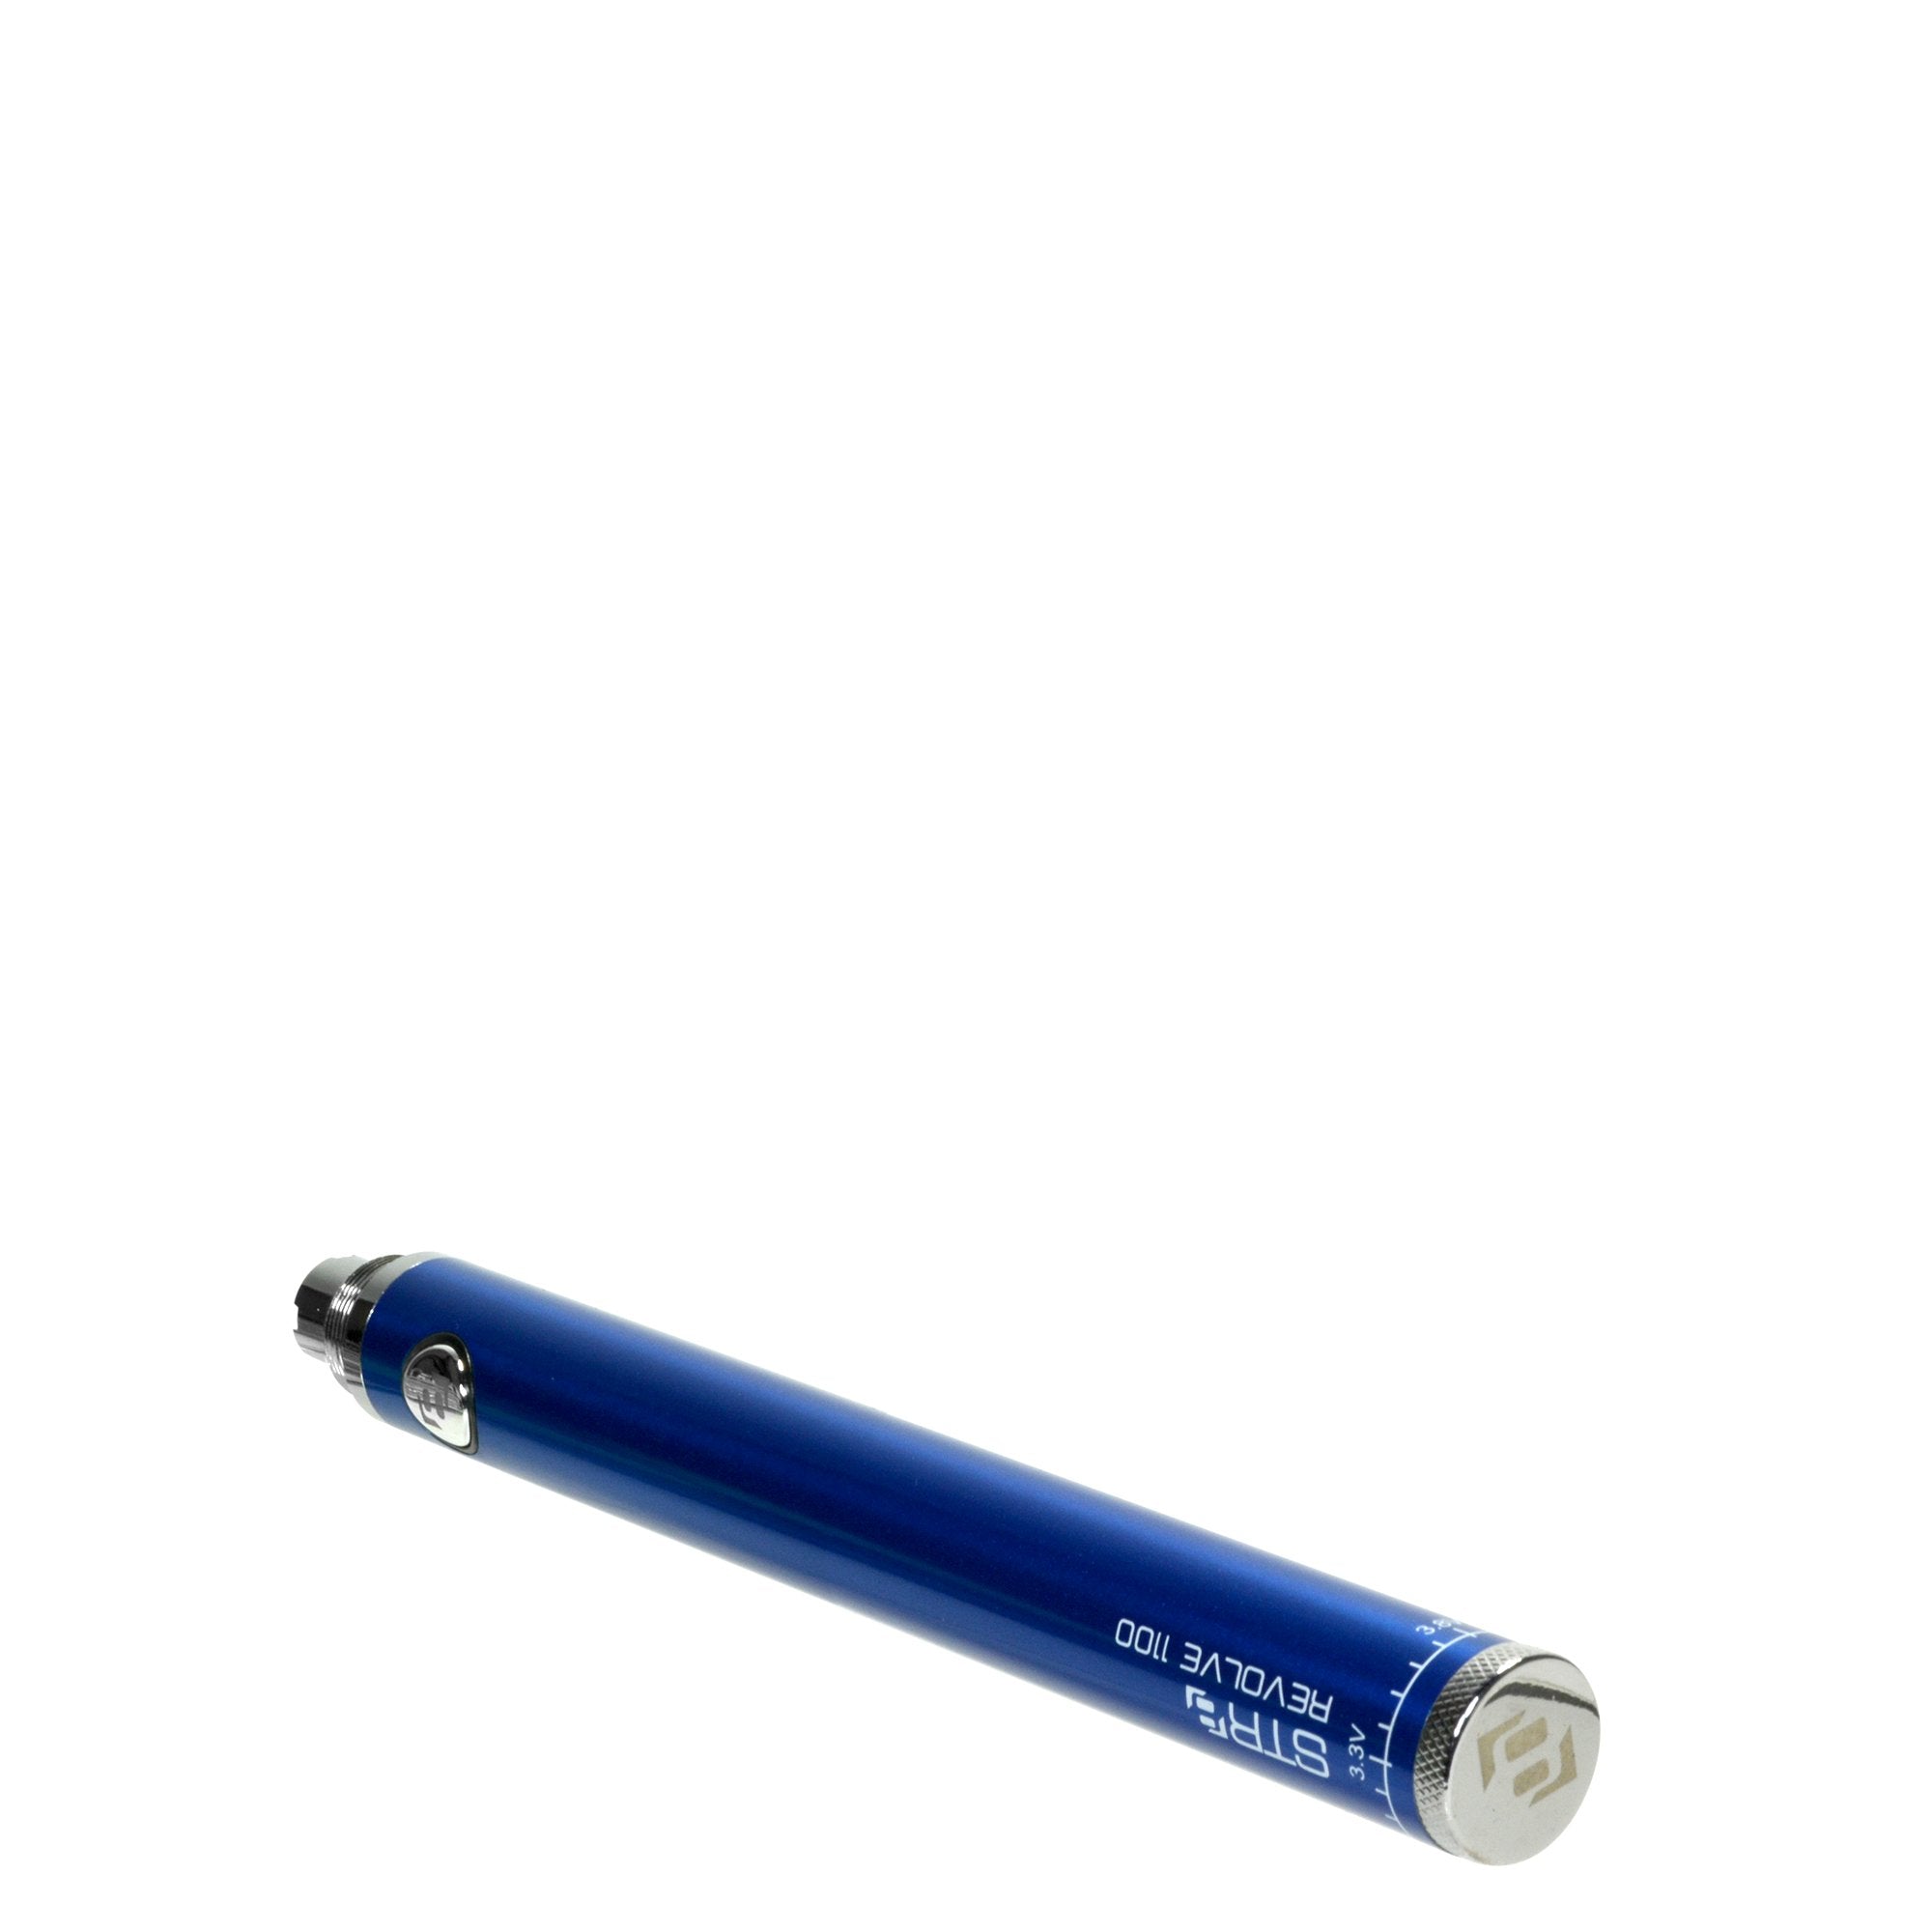 STR8 | Revolve Evod Vape Battery | 1100mAh - Blue - 5 Count - 4